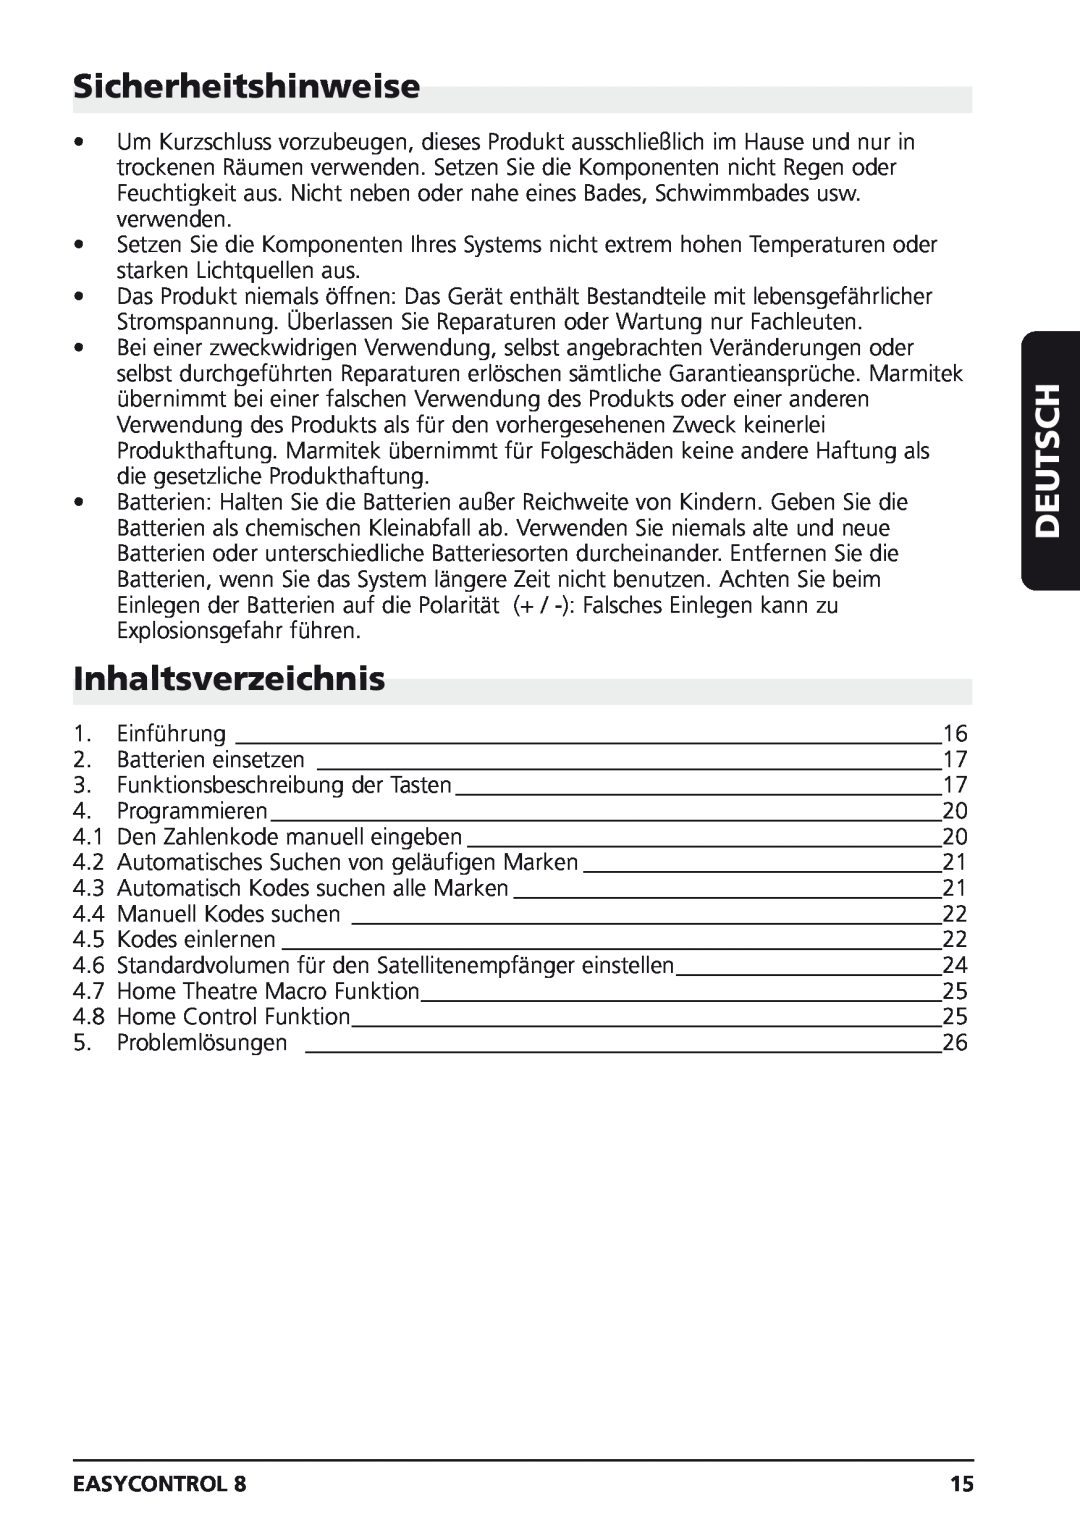 Marmitek Easycontrol 8 owner manual Sicherheitshinweise, Inhaltsverzeichnis, Deutsch 